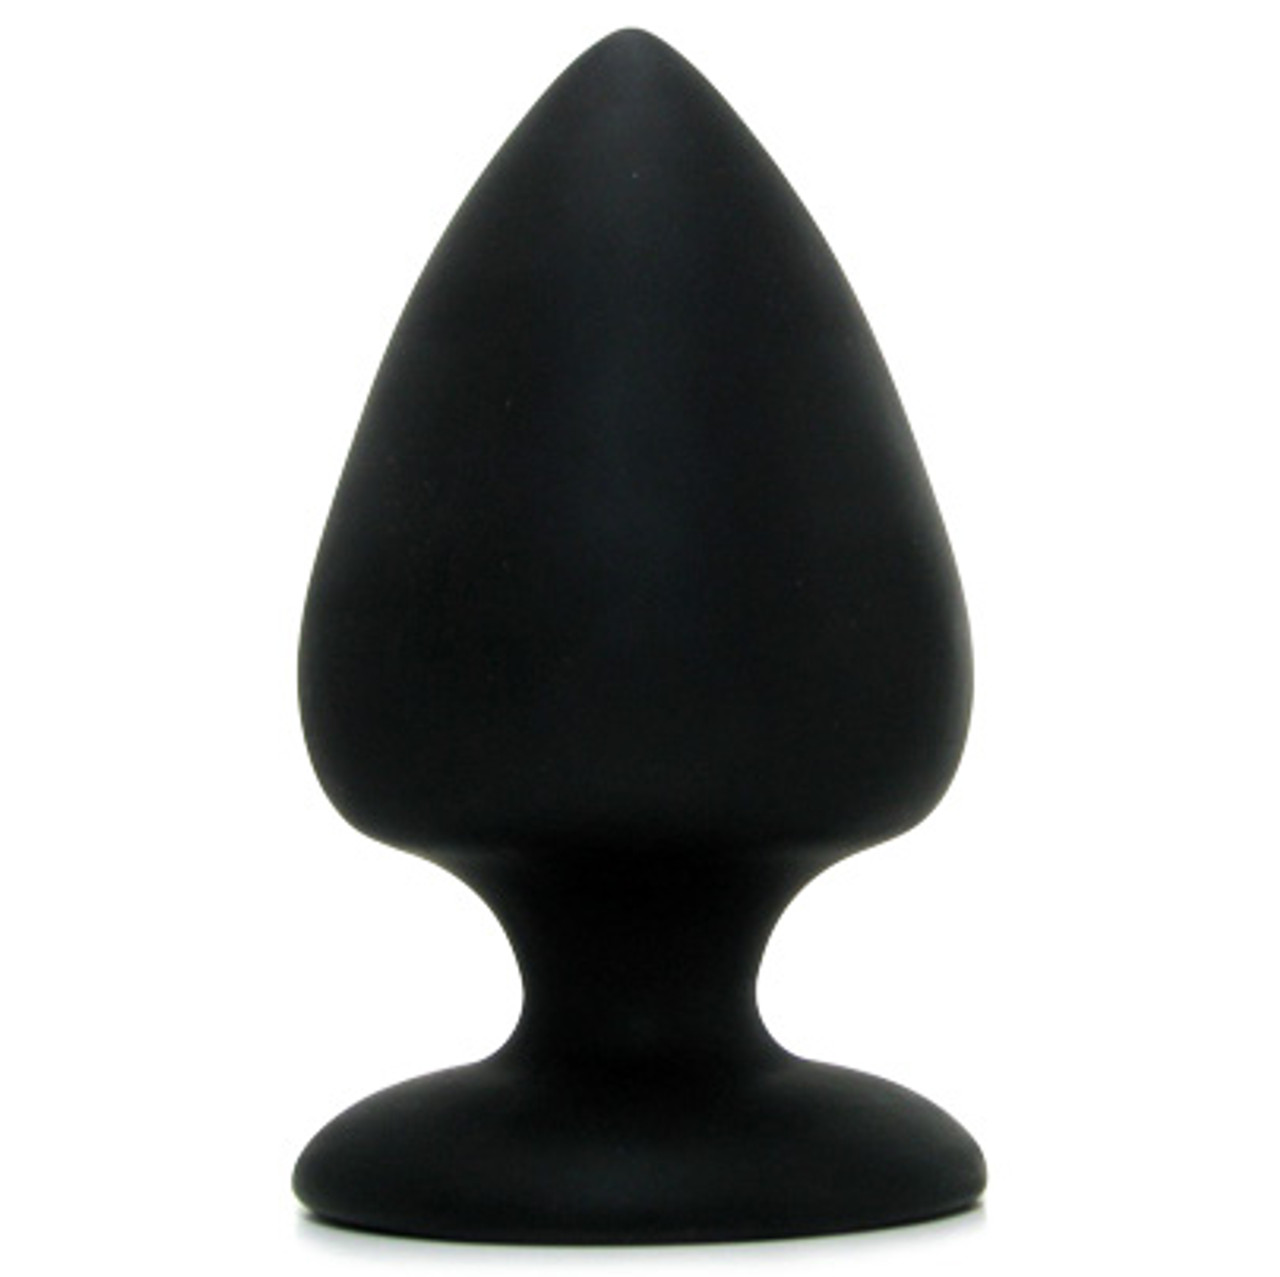 COLT XL Big Boy Silicone Butt Plug Black Dallas Novelty